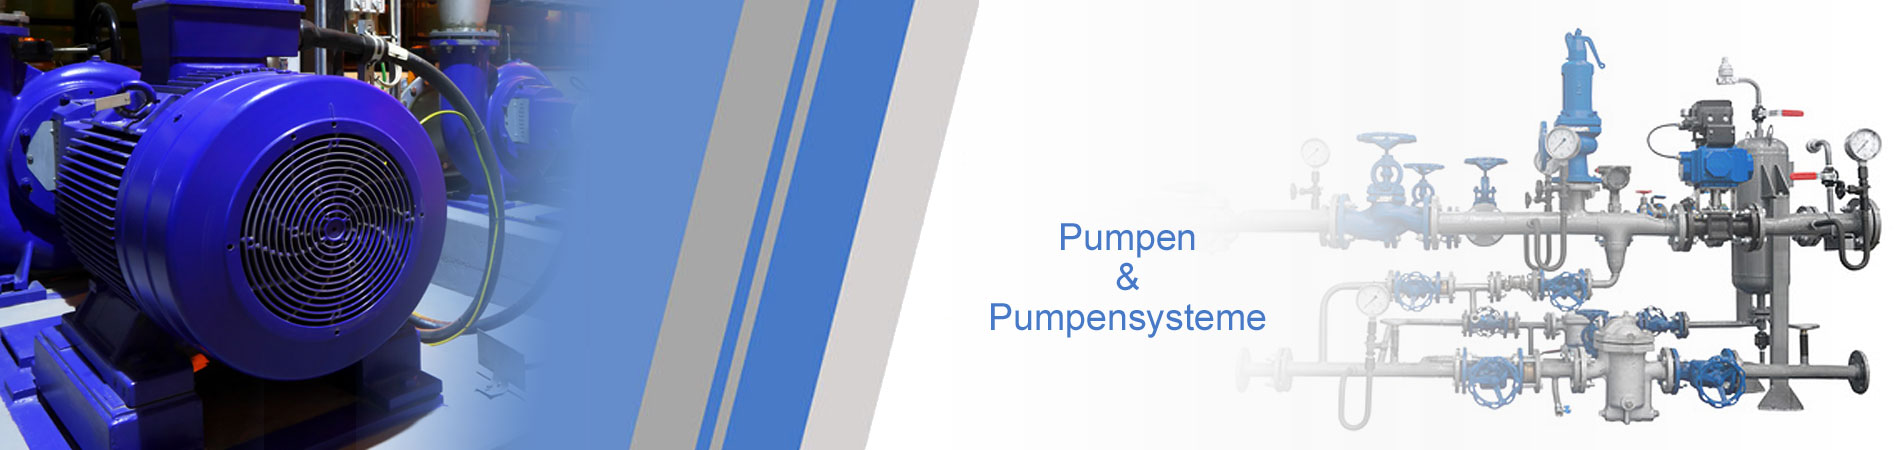 Pumpentechnik Pumpen und Pumpensysteme FDB-Business